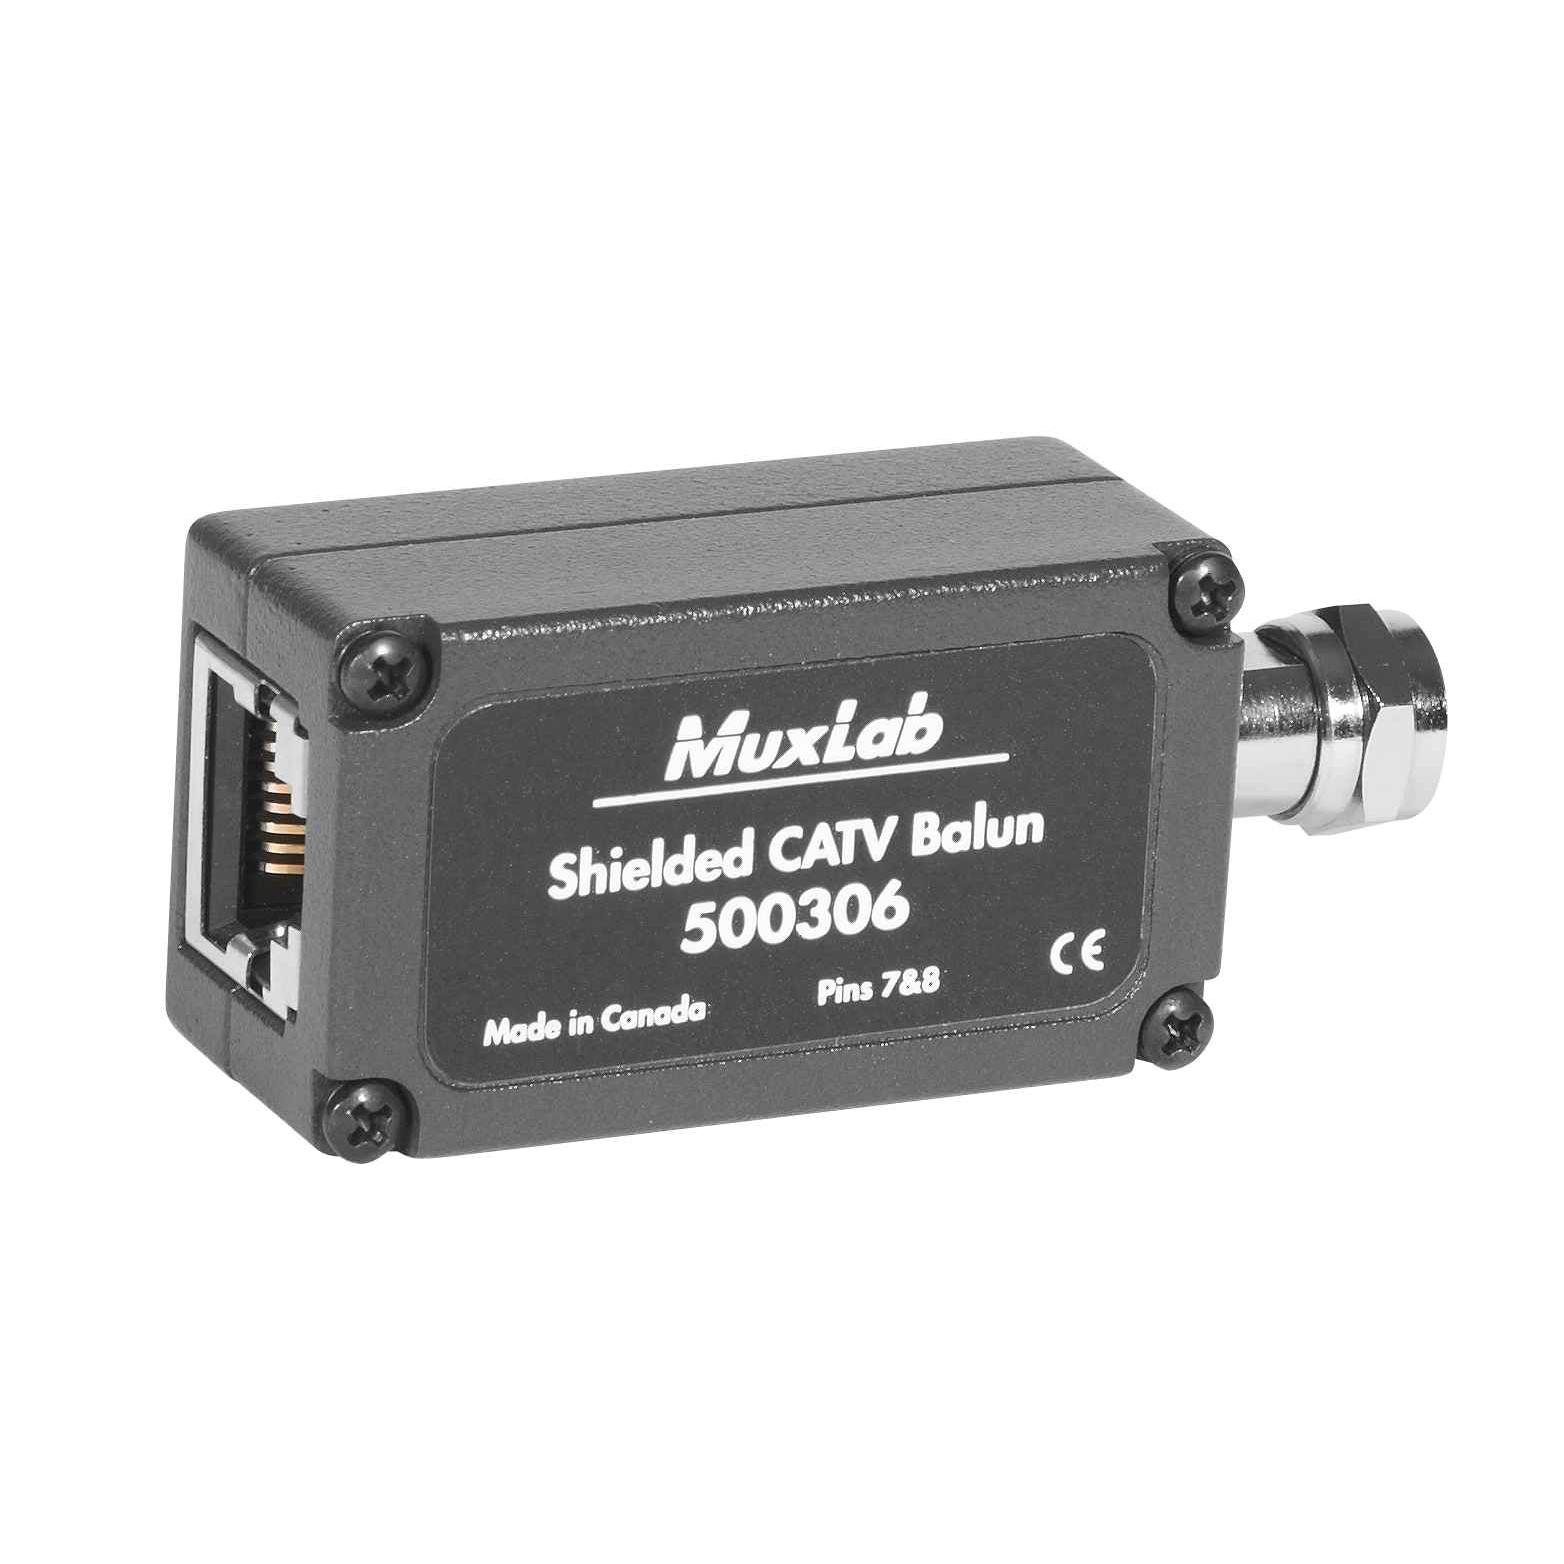 Muxlab 500306